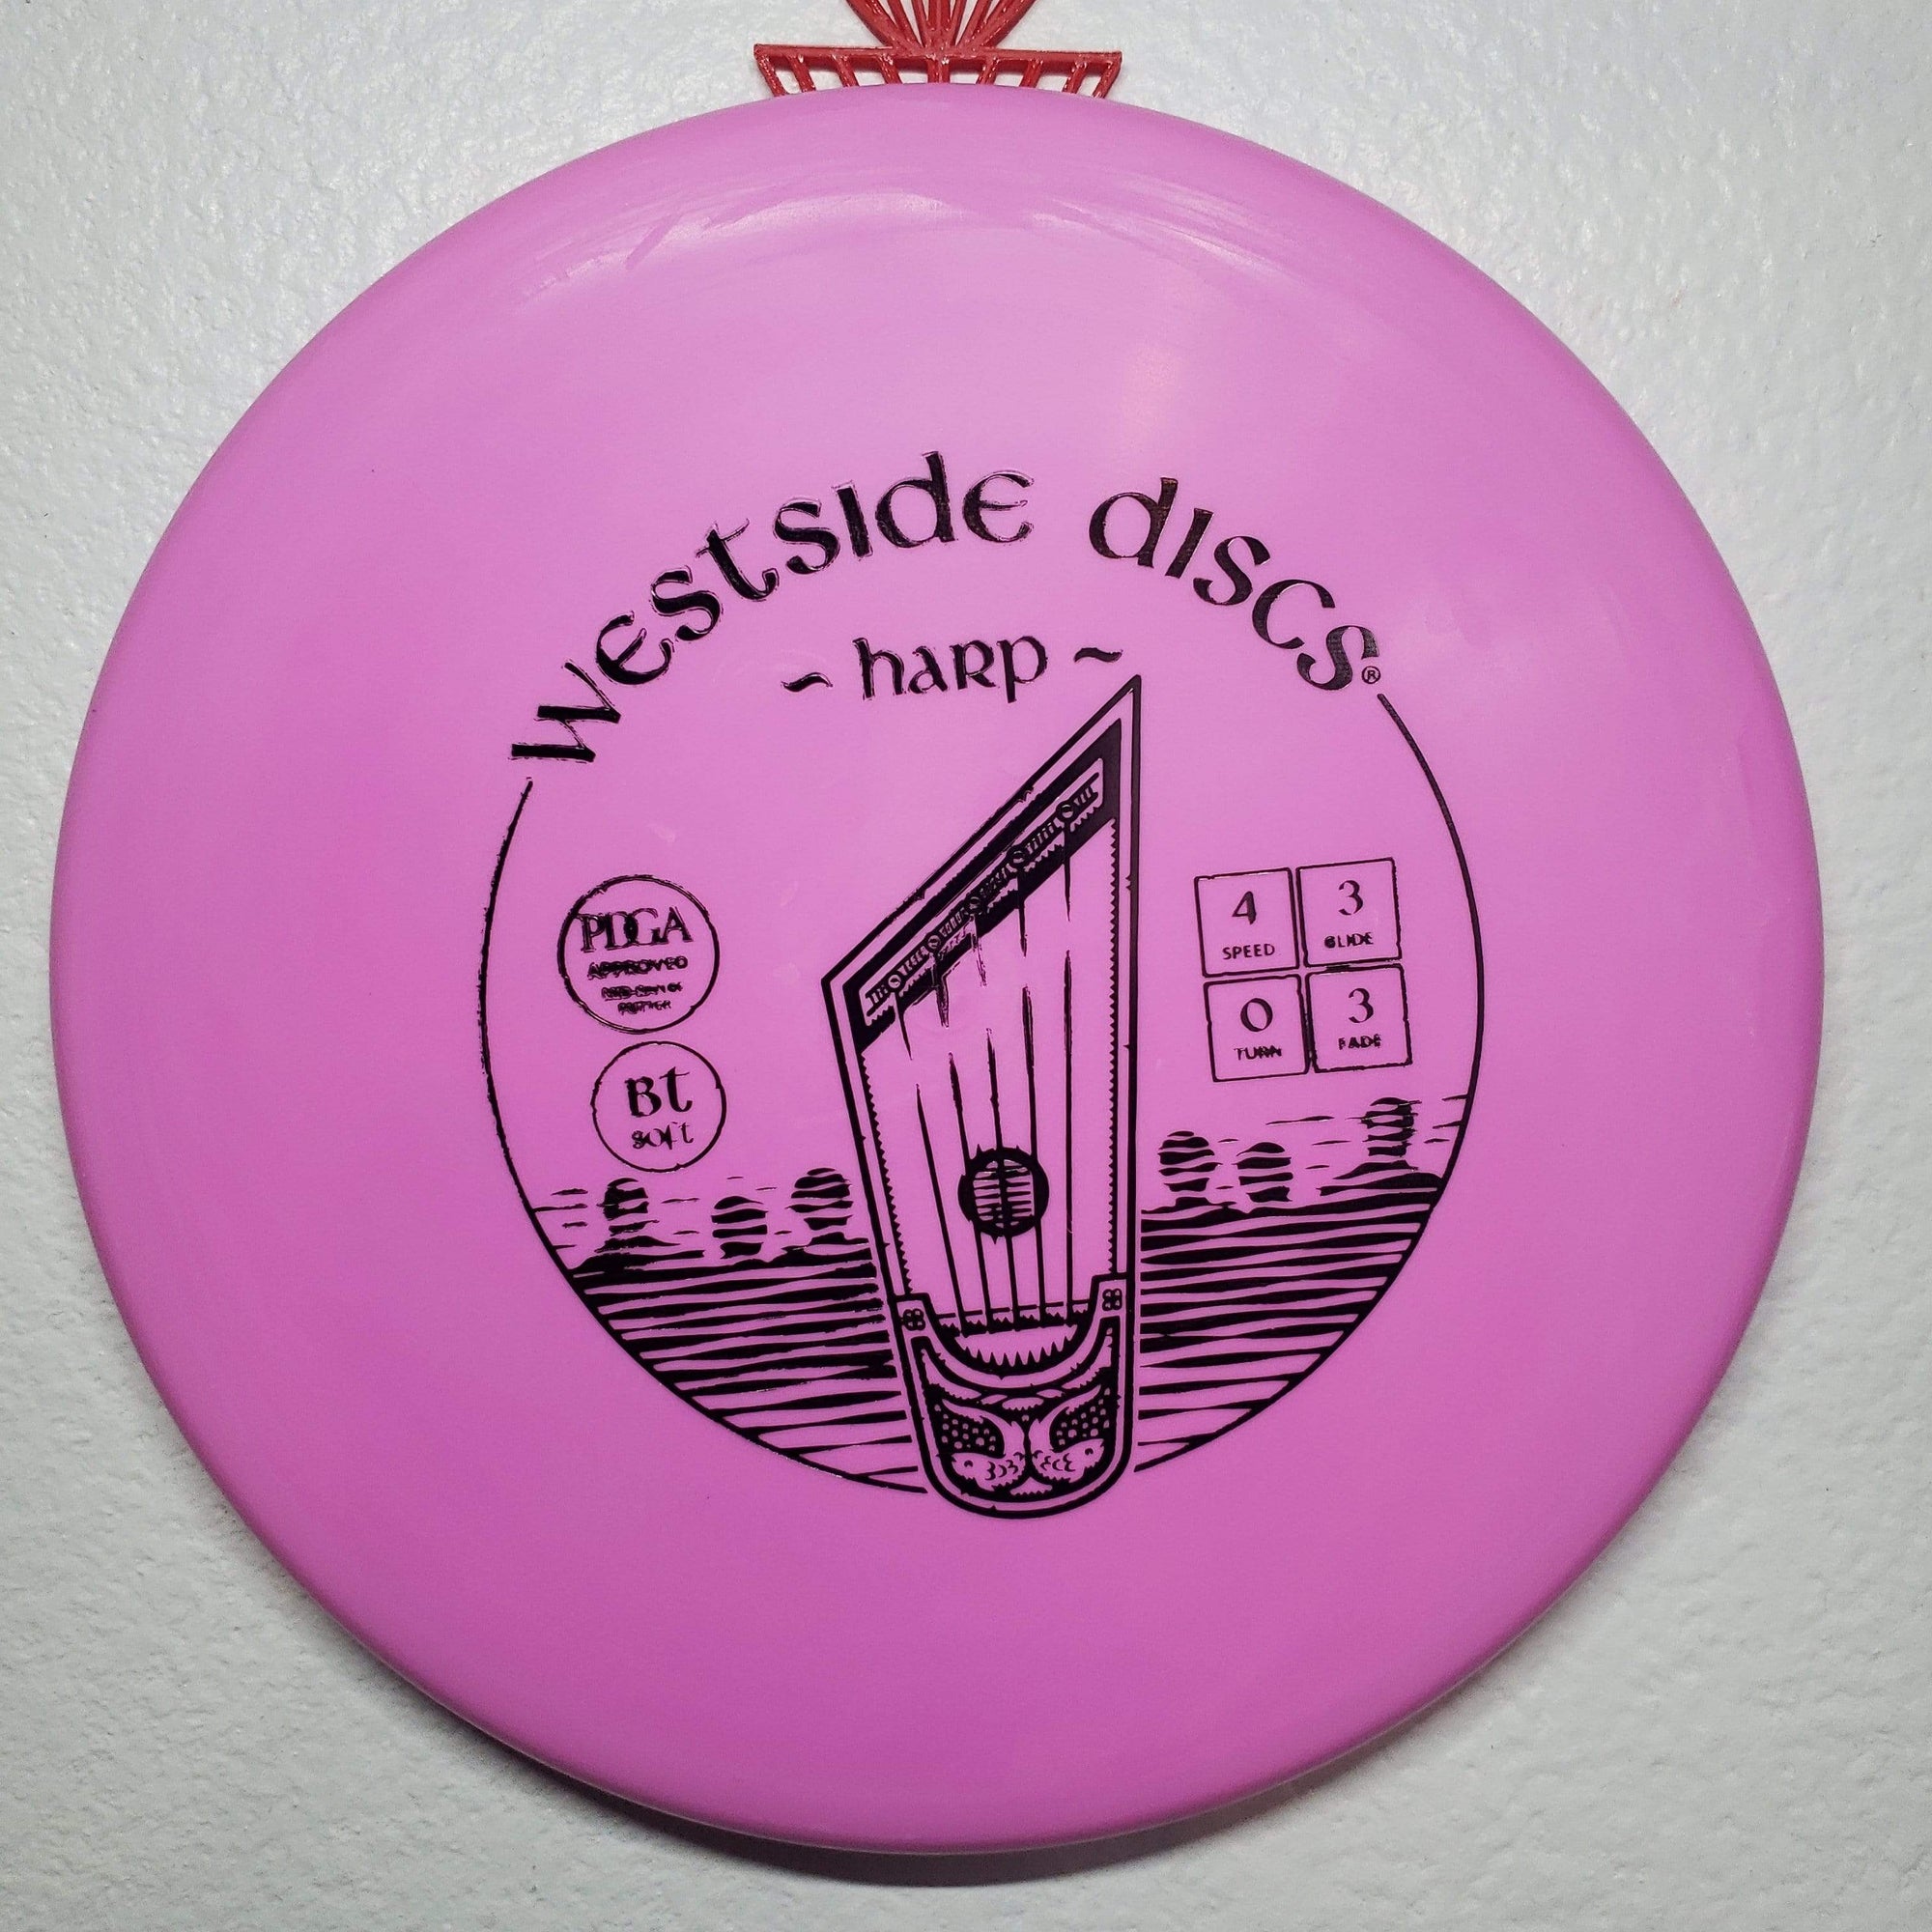 Westside Discs Mid Range Red Green Stamp 174g Westside Discs BT Soft Harp